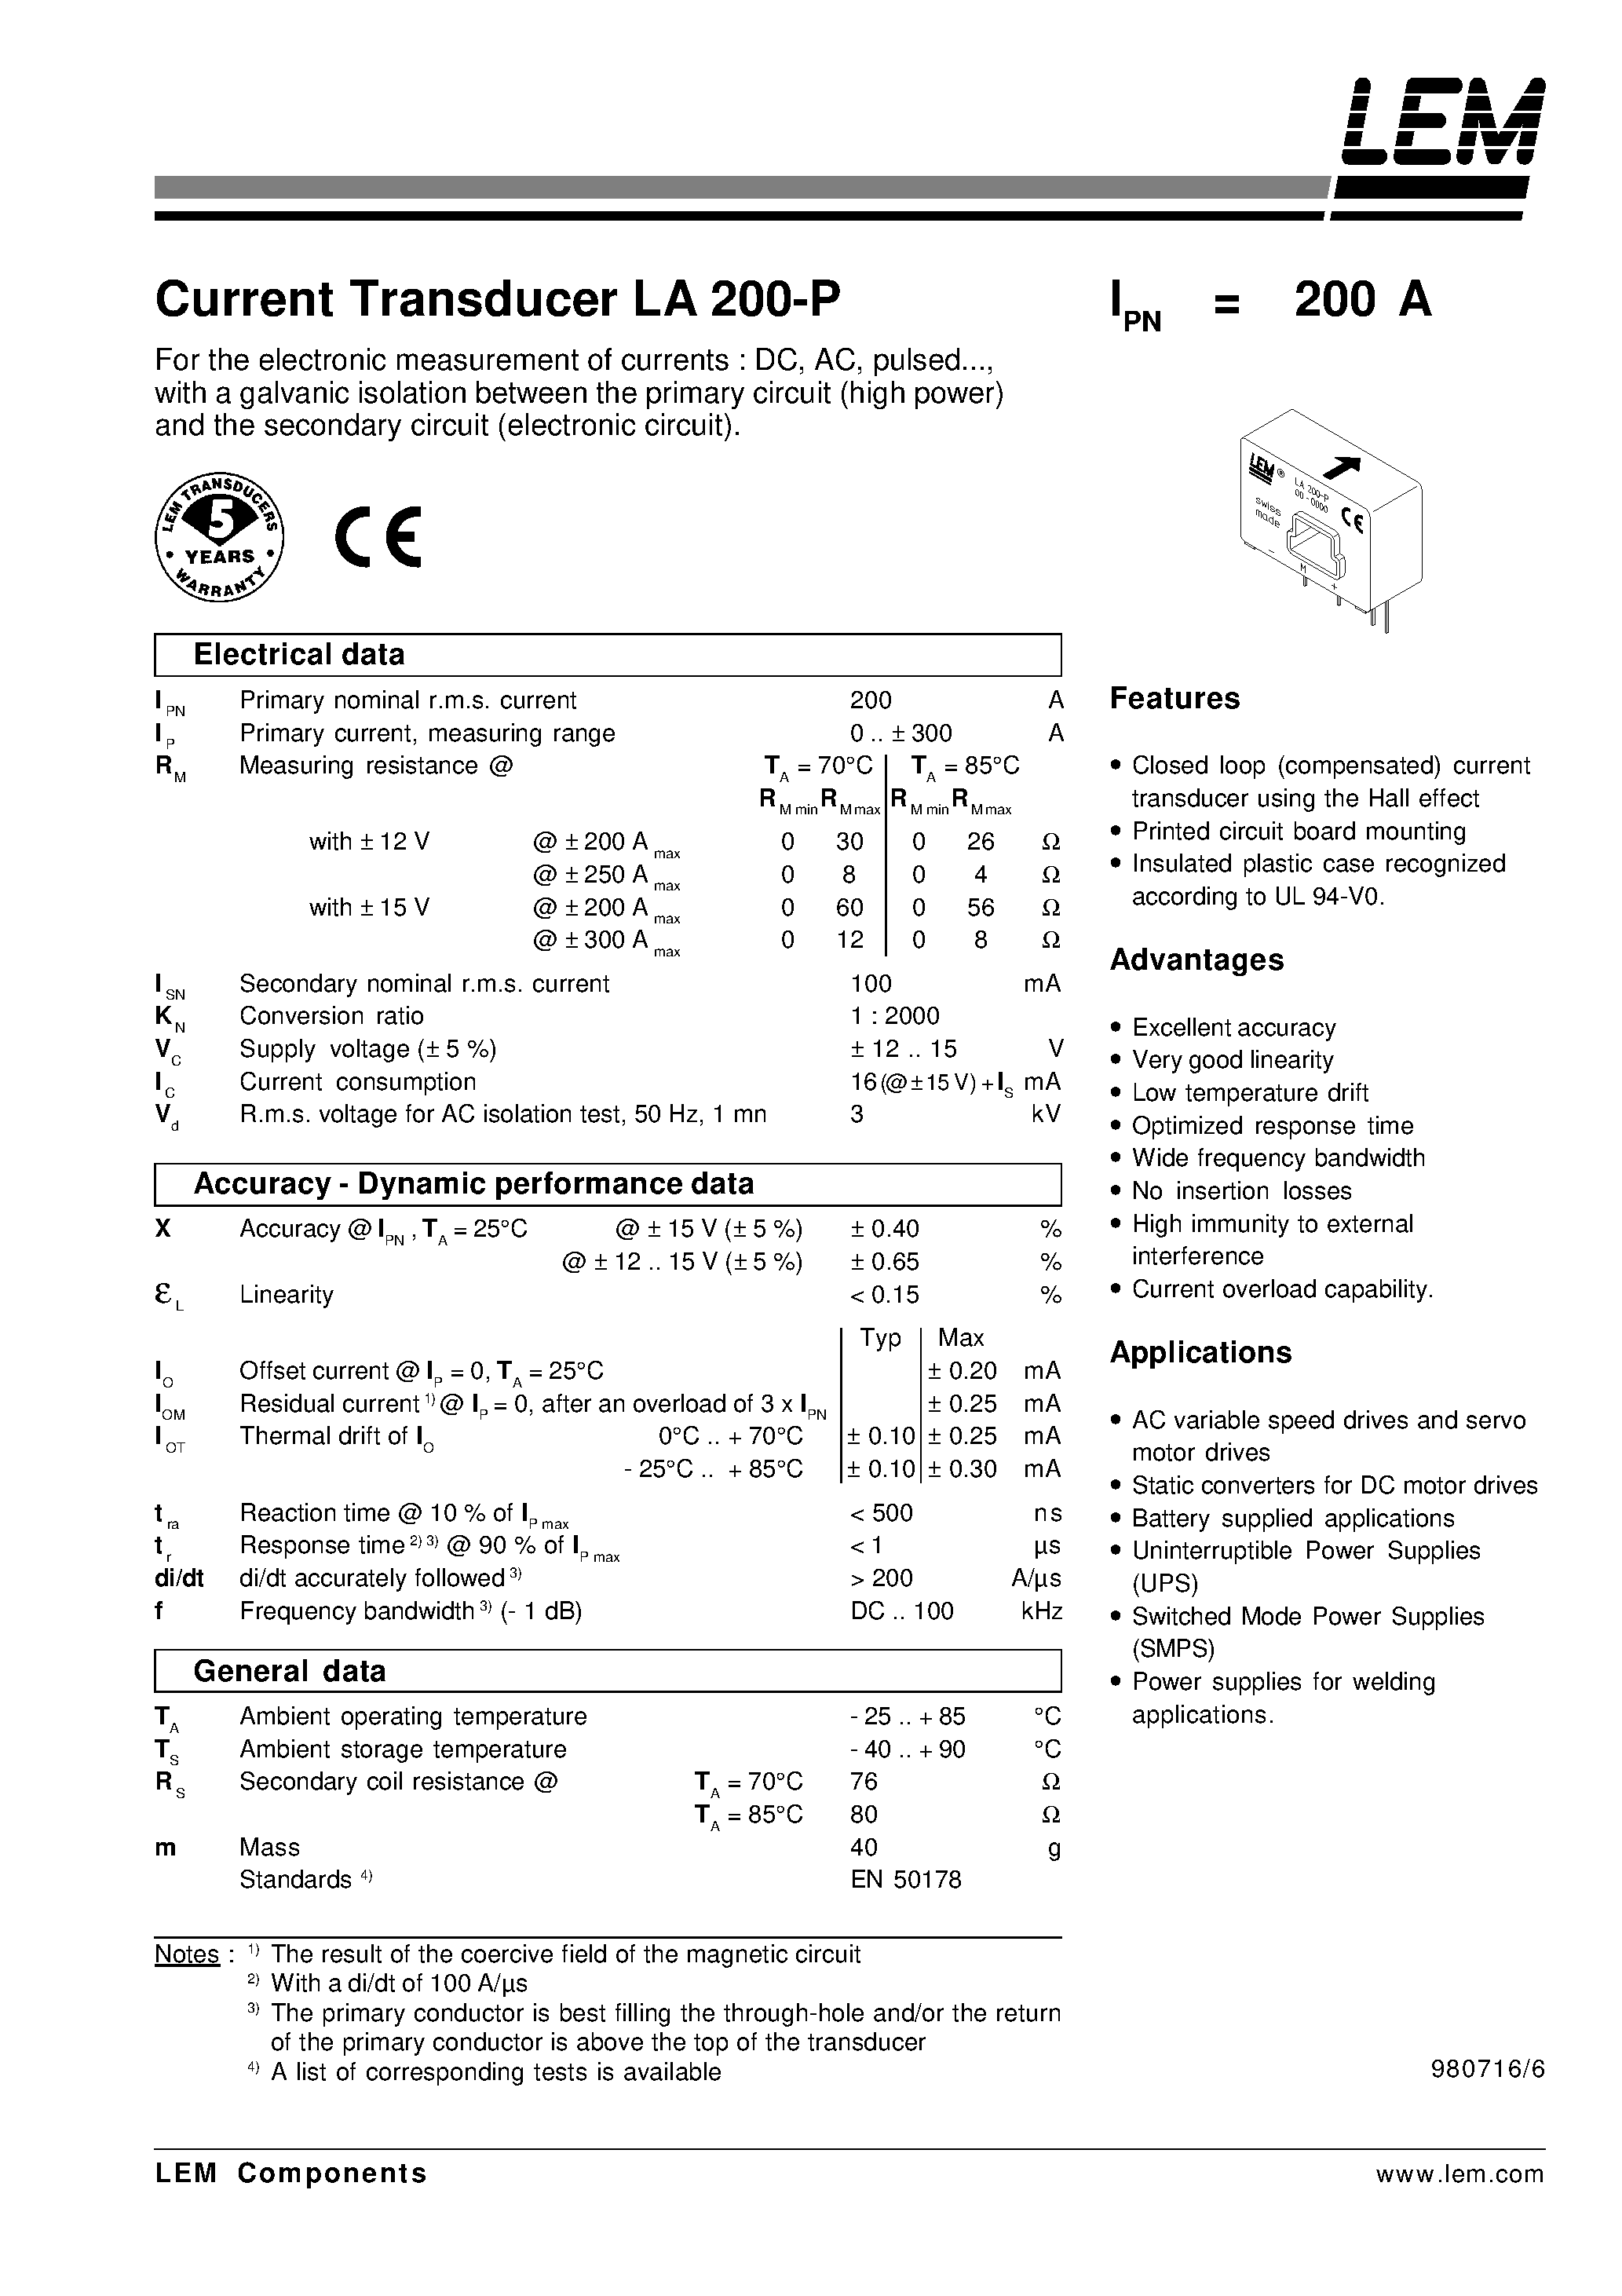 Datasheet LA200-P - Current Transducer LA 200-P page 1